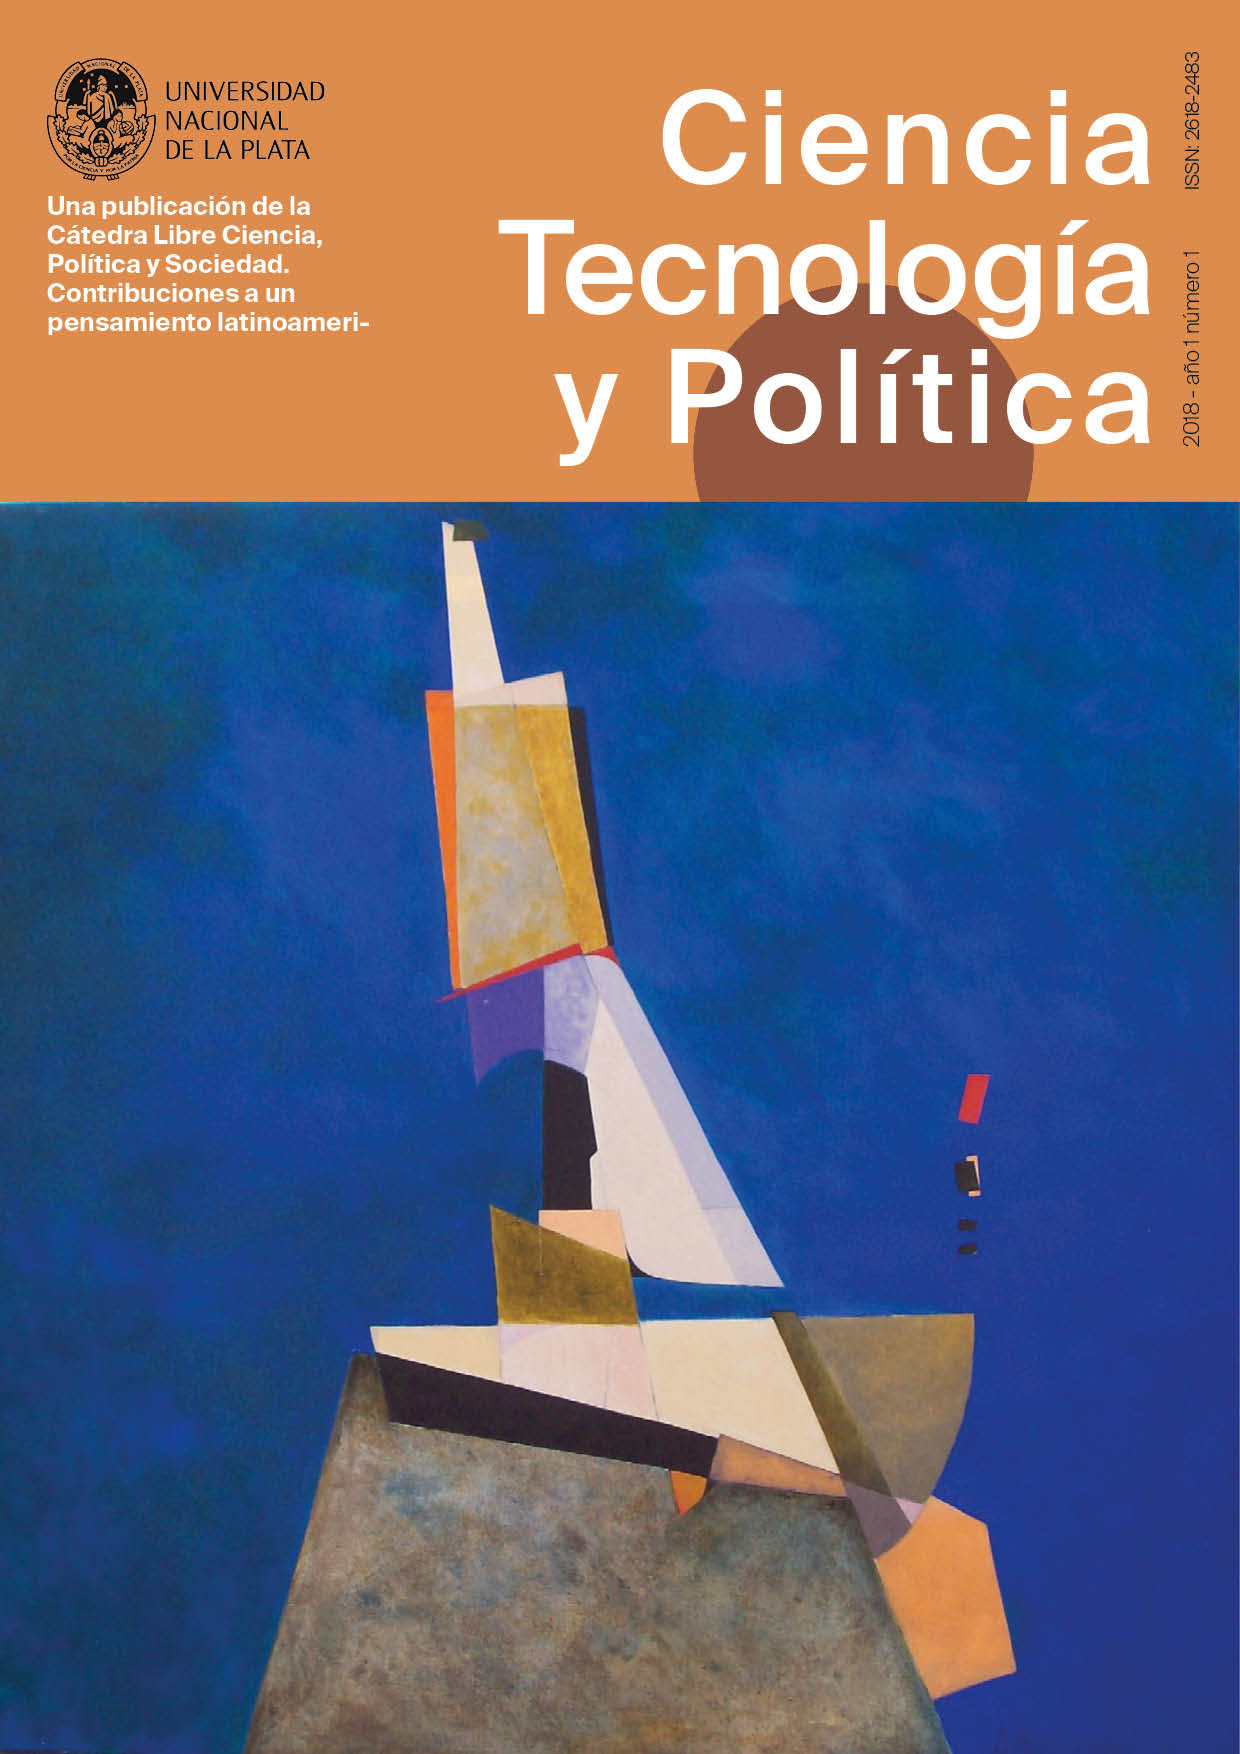 Revista Ciencia Tecnologia y Politica